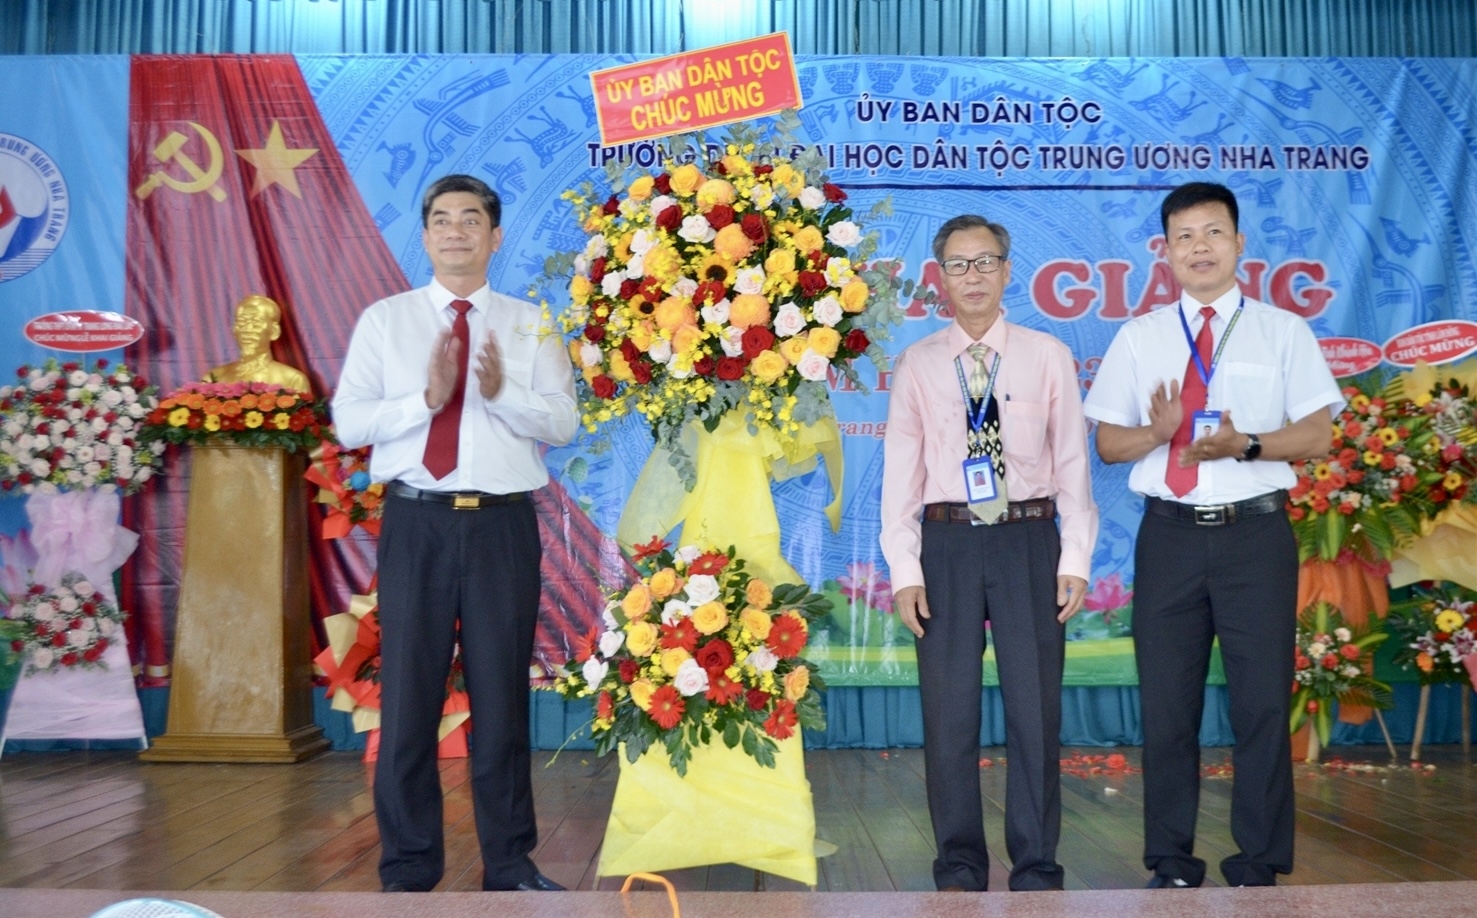 Thứ trưởng, Phó Chủ nhiệm Uỷ ban Dân tộc Y Vinh Tơr tặng hoa chúc mừng nhà trường nhân dịp khai giảng năm học mới